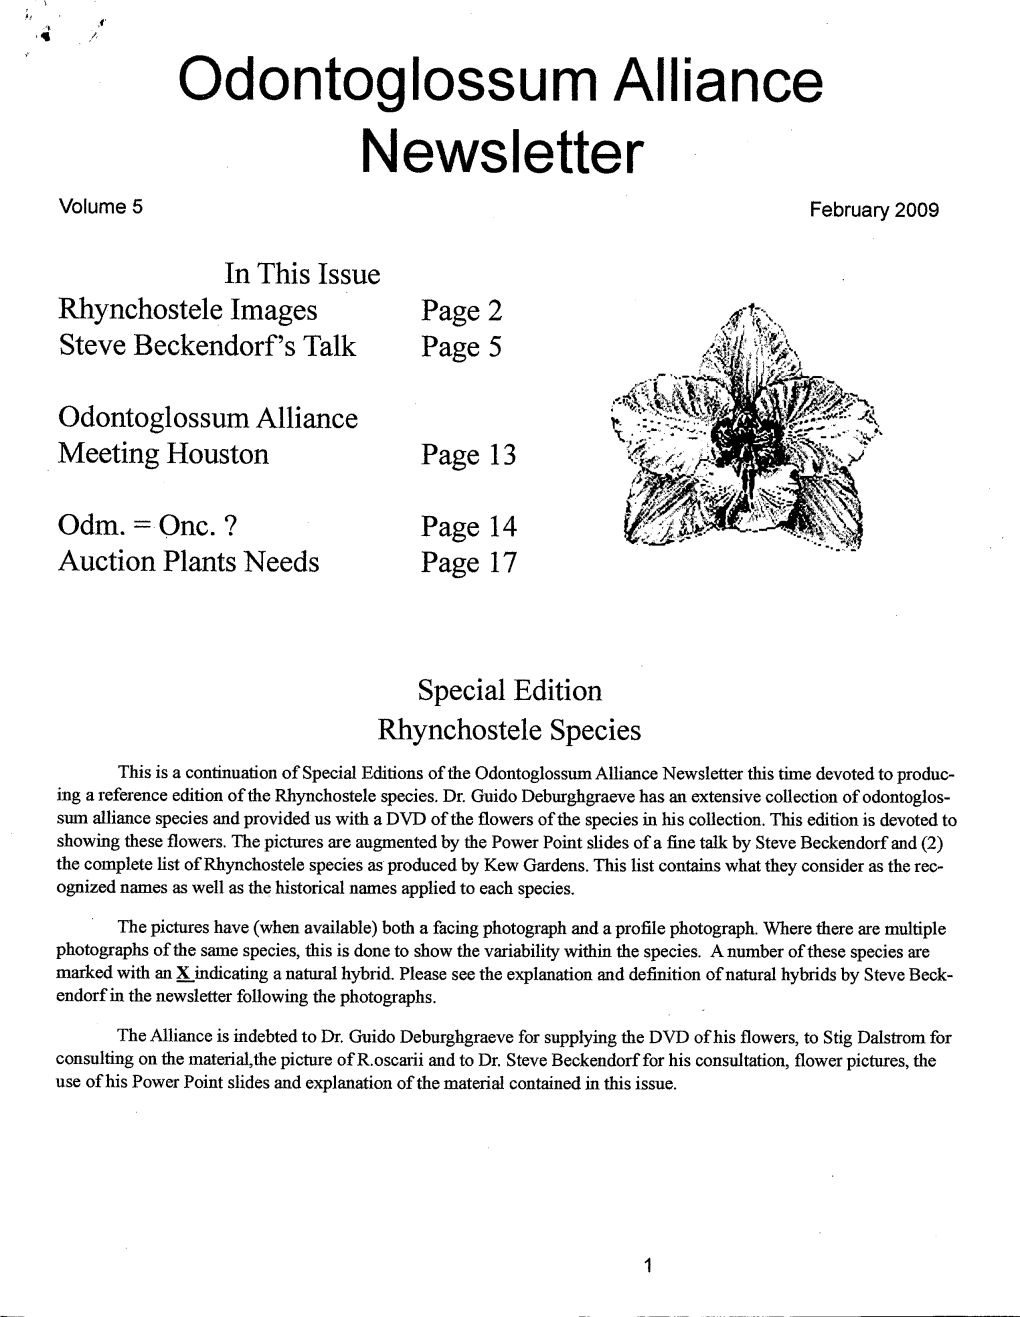 February 2009 Newsletter